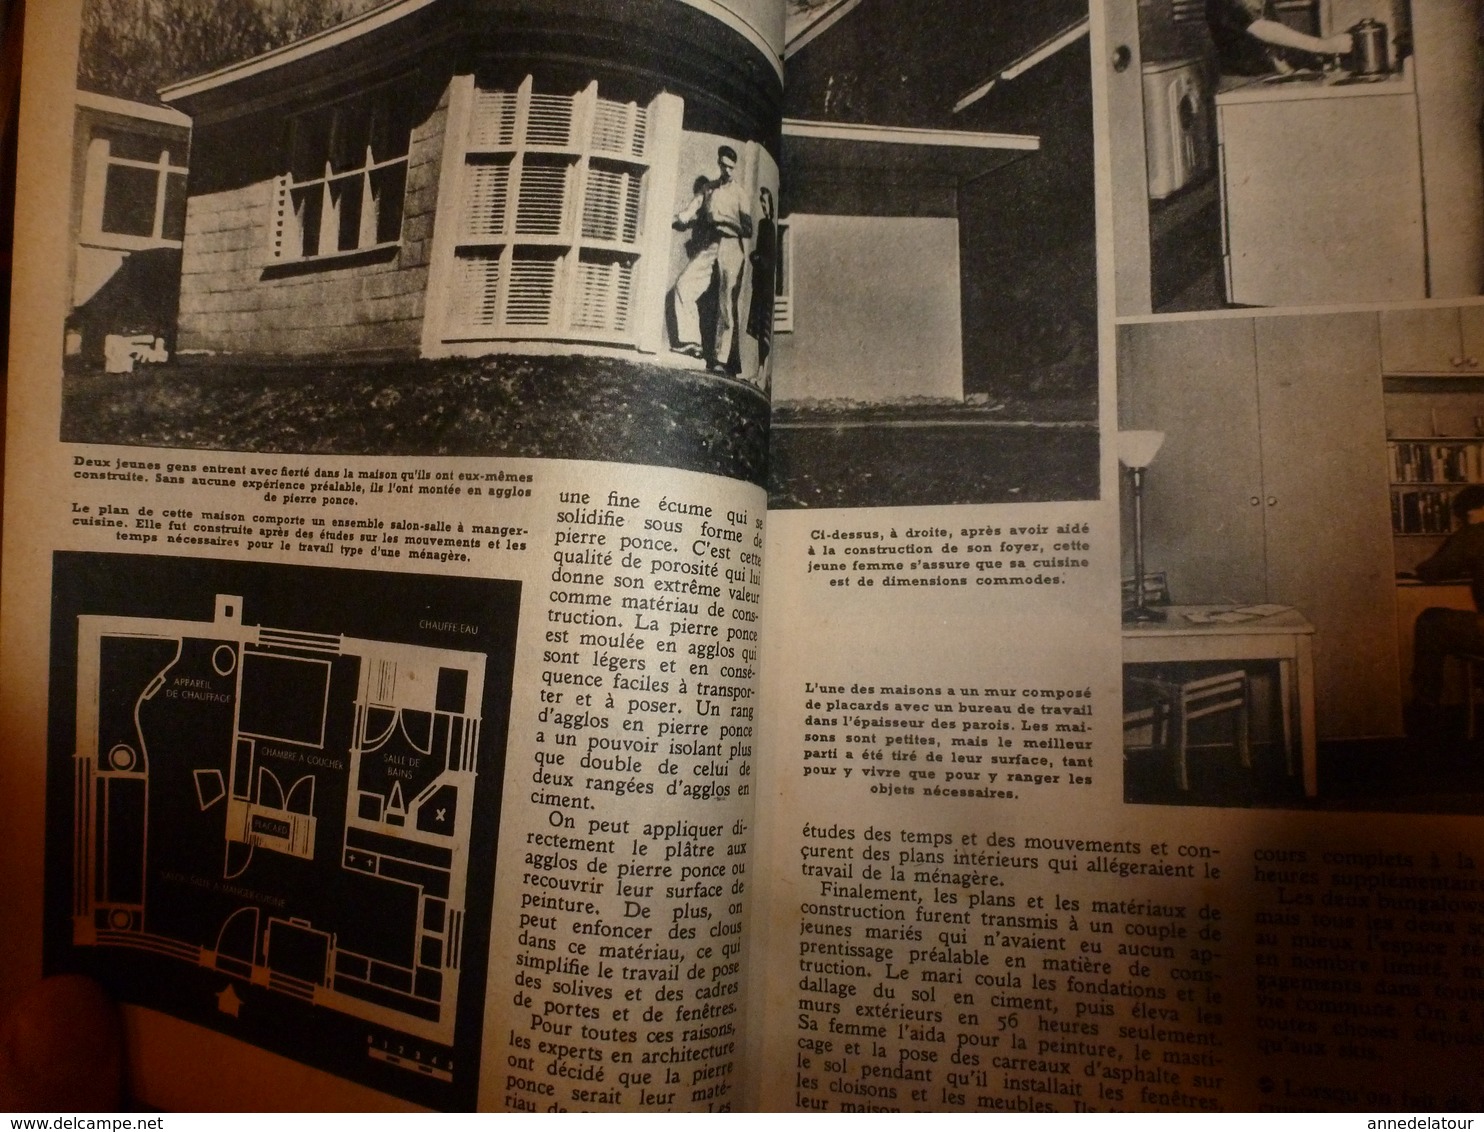 1951 MÉCANIQUE POPULAIRE:Faire encadrement de porte;Contre maladie des pins;Construire avec des agglos pierre-ponce; etc